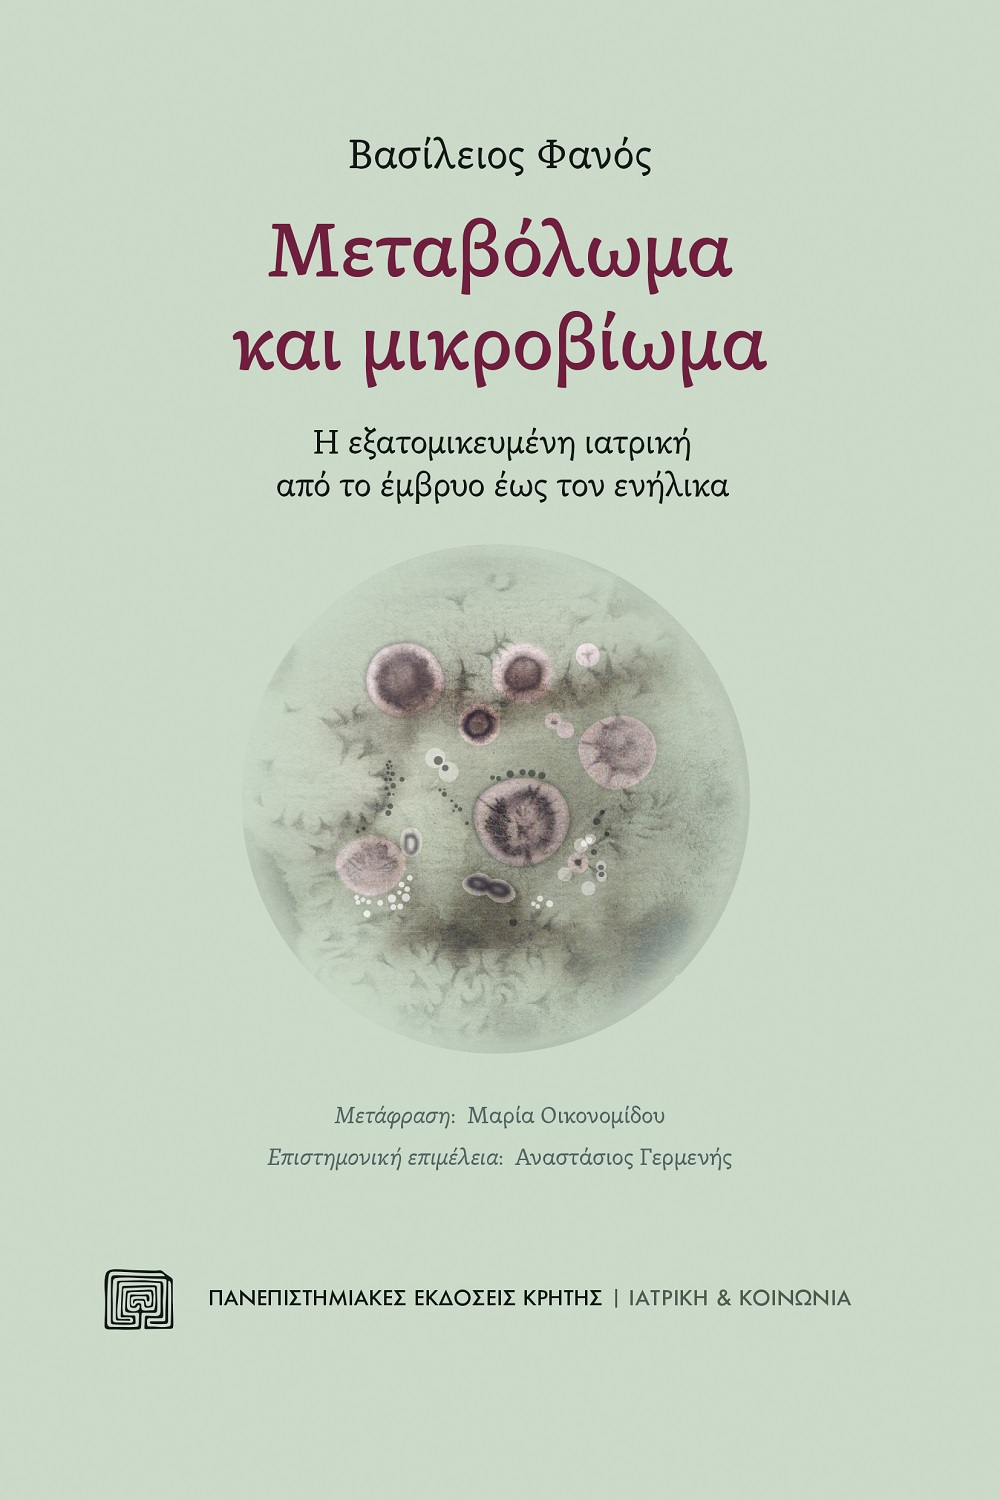 Μεταβόλωμα και μικροβίωμα, Η εξατομικευμένη ιατρική από το έμβρυο έως τον ενήλικα, Φανός, Βασίλειος, Πανεπιστημιακές Εκδόσεις Κρήτης, 2022